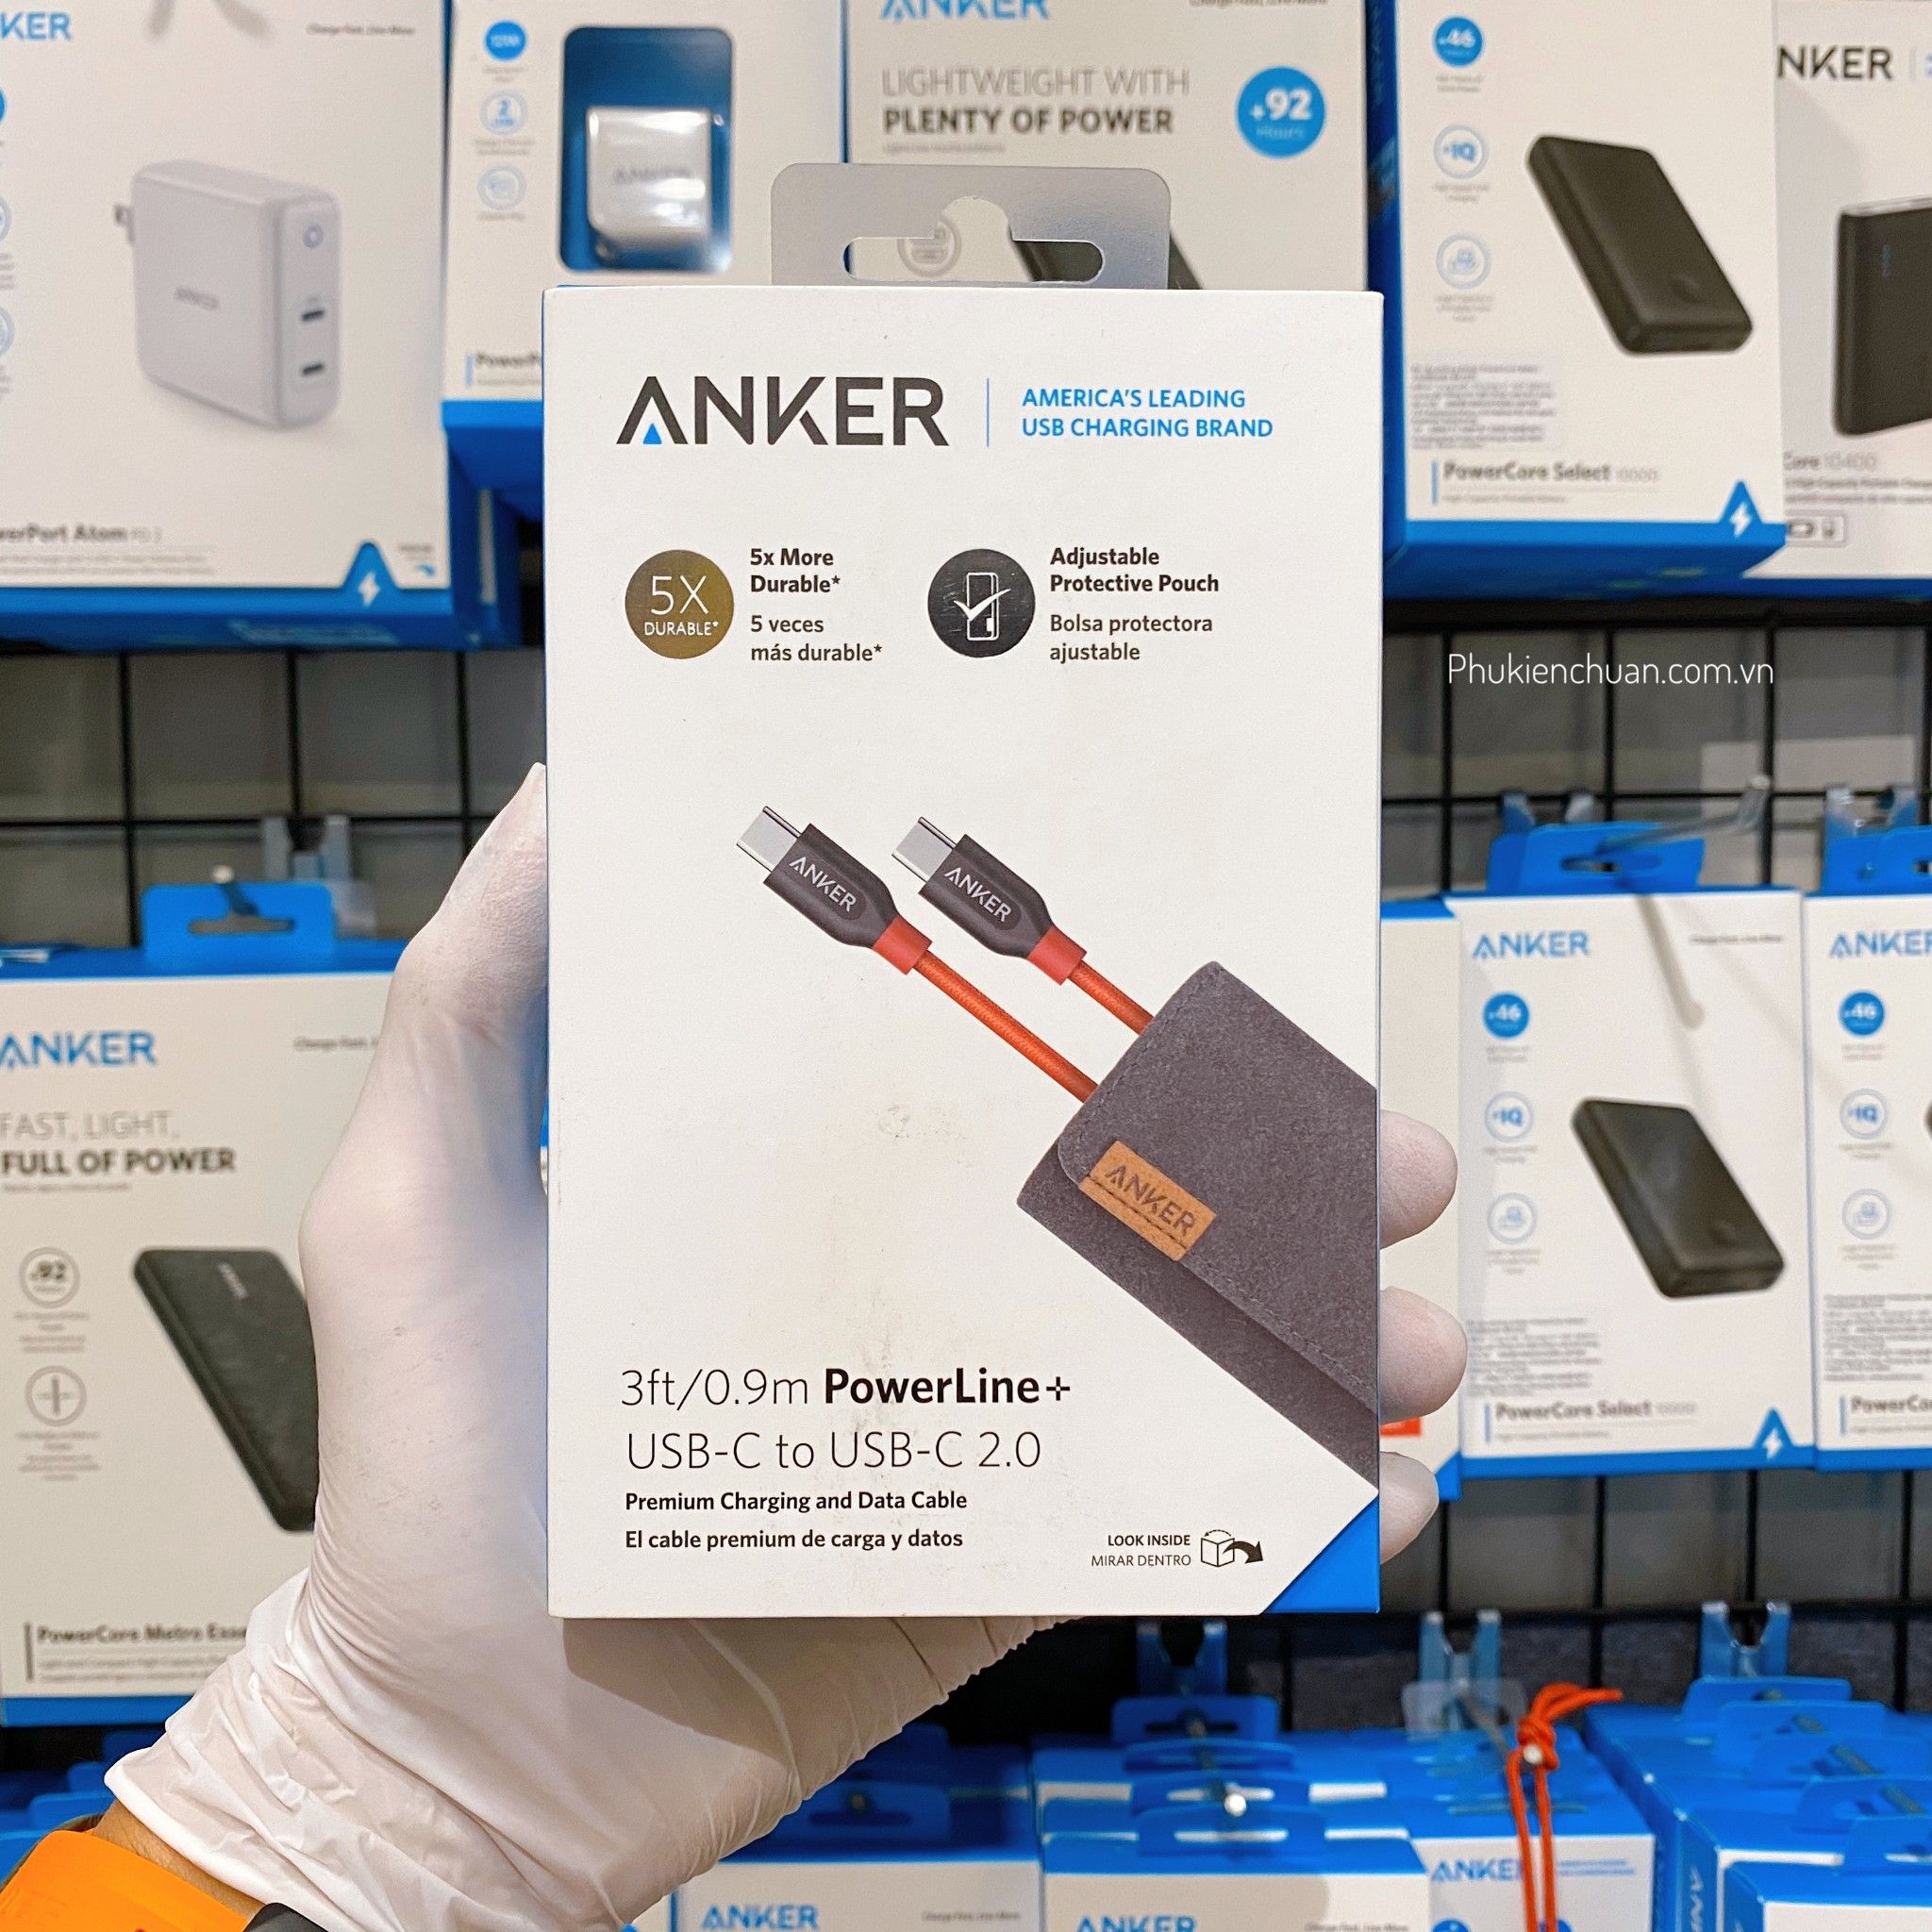  Cáp Anker PowerLine+ USB-C ra USB-C 2.0 - Dài 0.9m - Đỏ 